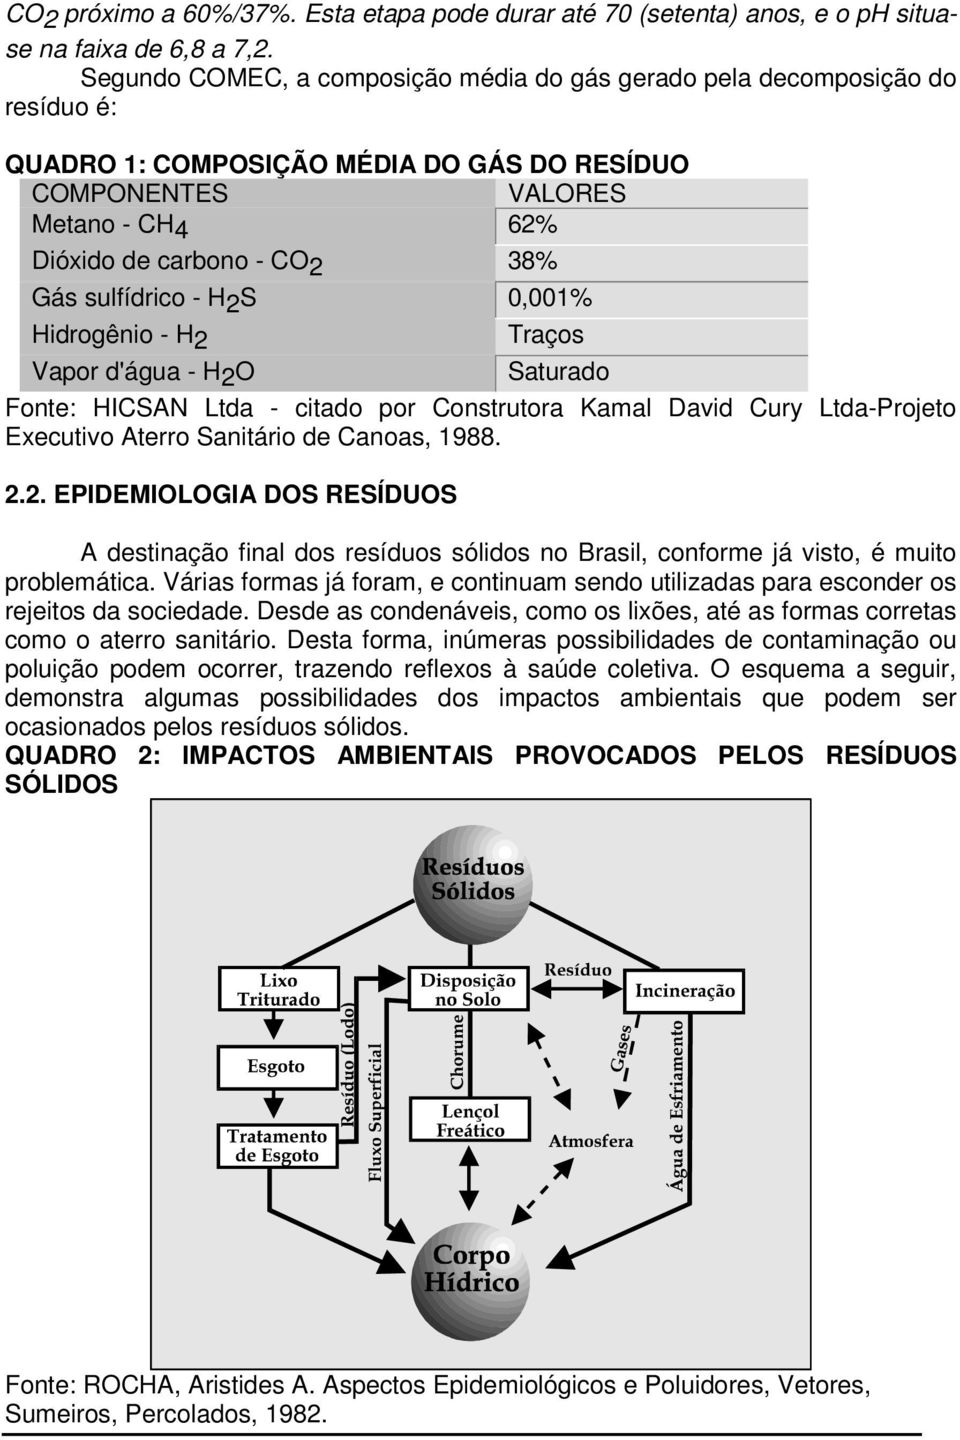 sulfídrico - H 2 S 0,001% Hidrogênio - H2 Vapor d'água - H2O Traços Saturado Fonte: HICSAN Ltda - citado por Construtora Kamal David Cury Ltda-Projeto Executivo Aterro Sanitário de Canoas, 1988. 2.2. EPIDEMIOLOGIA DOS RESÍDUOS A destinação final dos resíduos sólidos no Brasil, conforme já visto, é muito problemática.